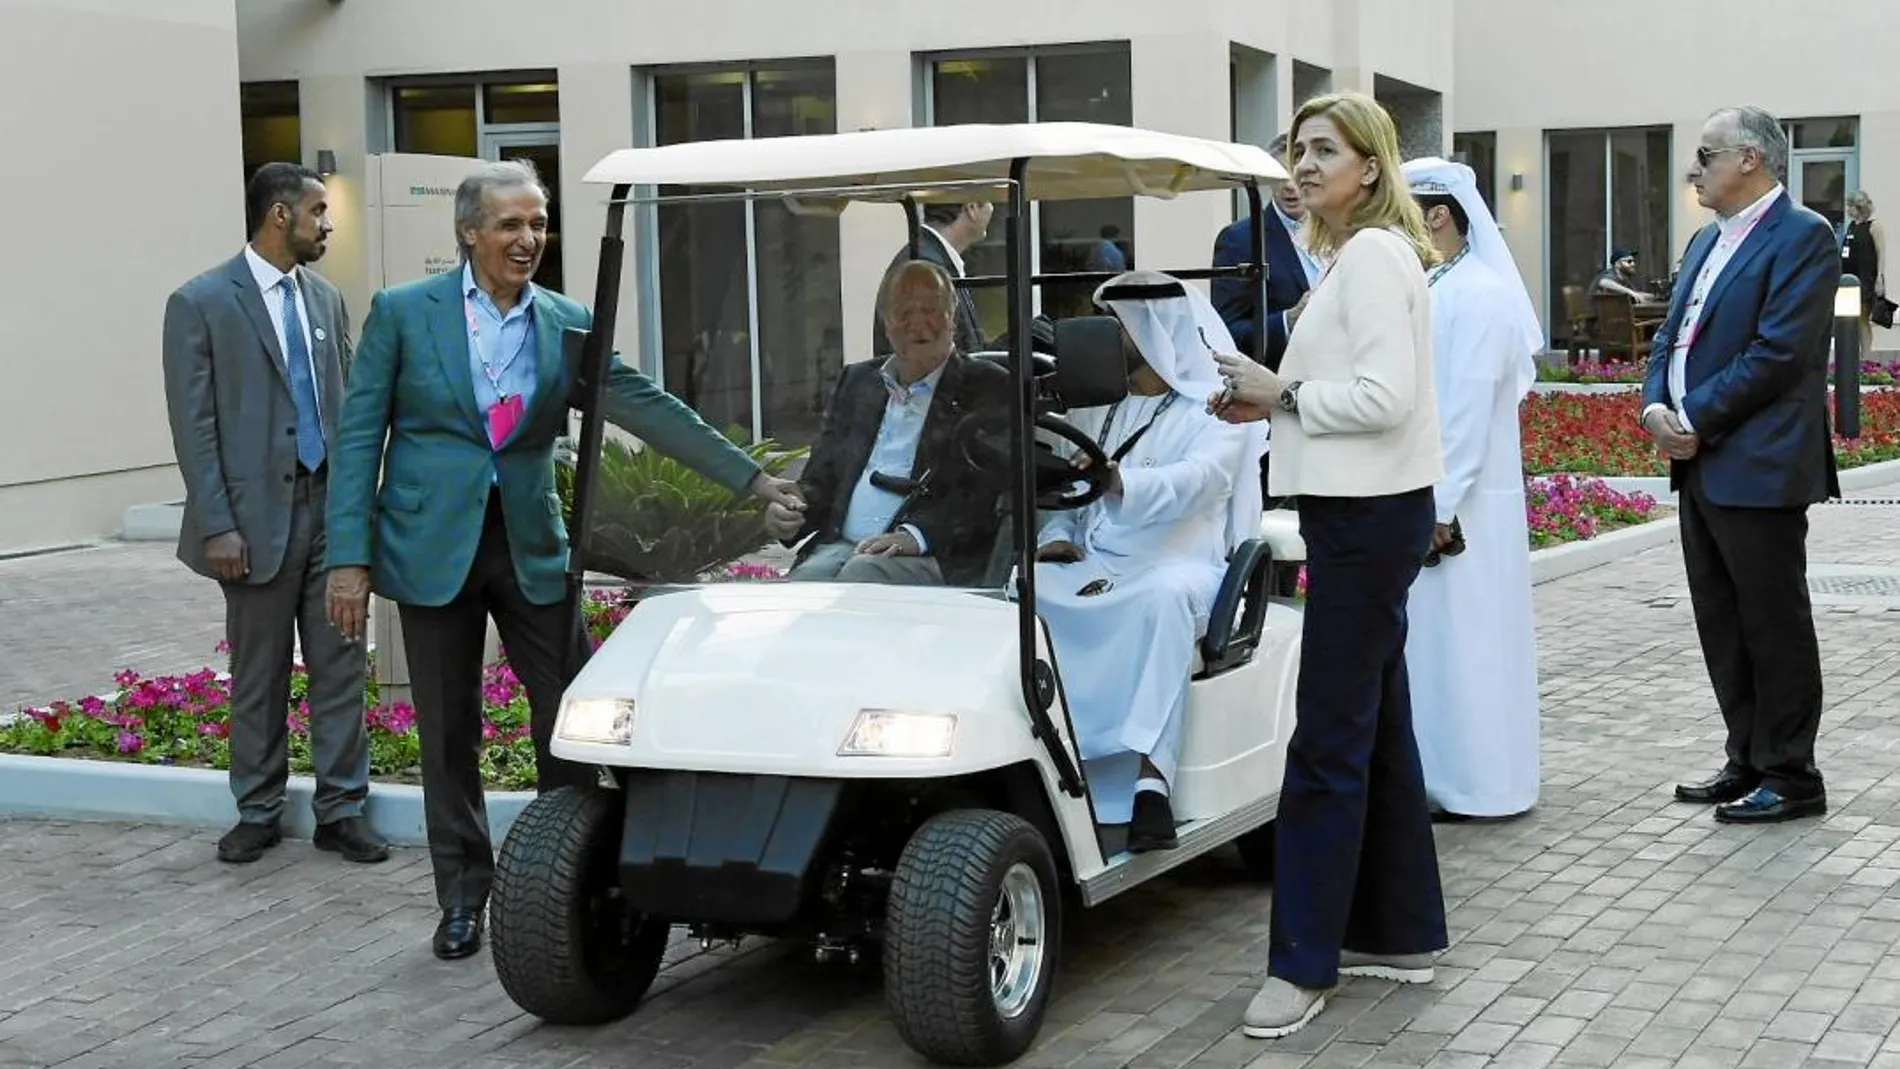 El Rey Juan Carlos asiste junto a la Infanta Cristina en Abu Dabi al Gran Premio de Fórmula 1. Es la segunda aparición pública con su familia después de la foto de familia en el 80 cumpleaños de Doña Sofía